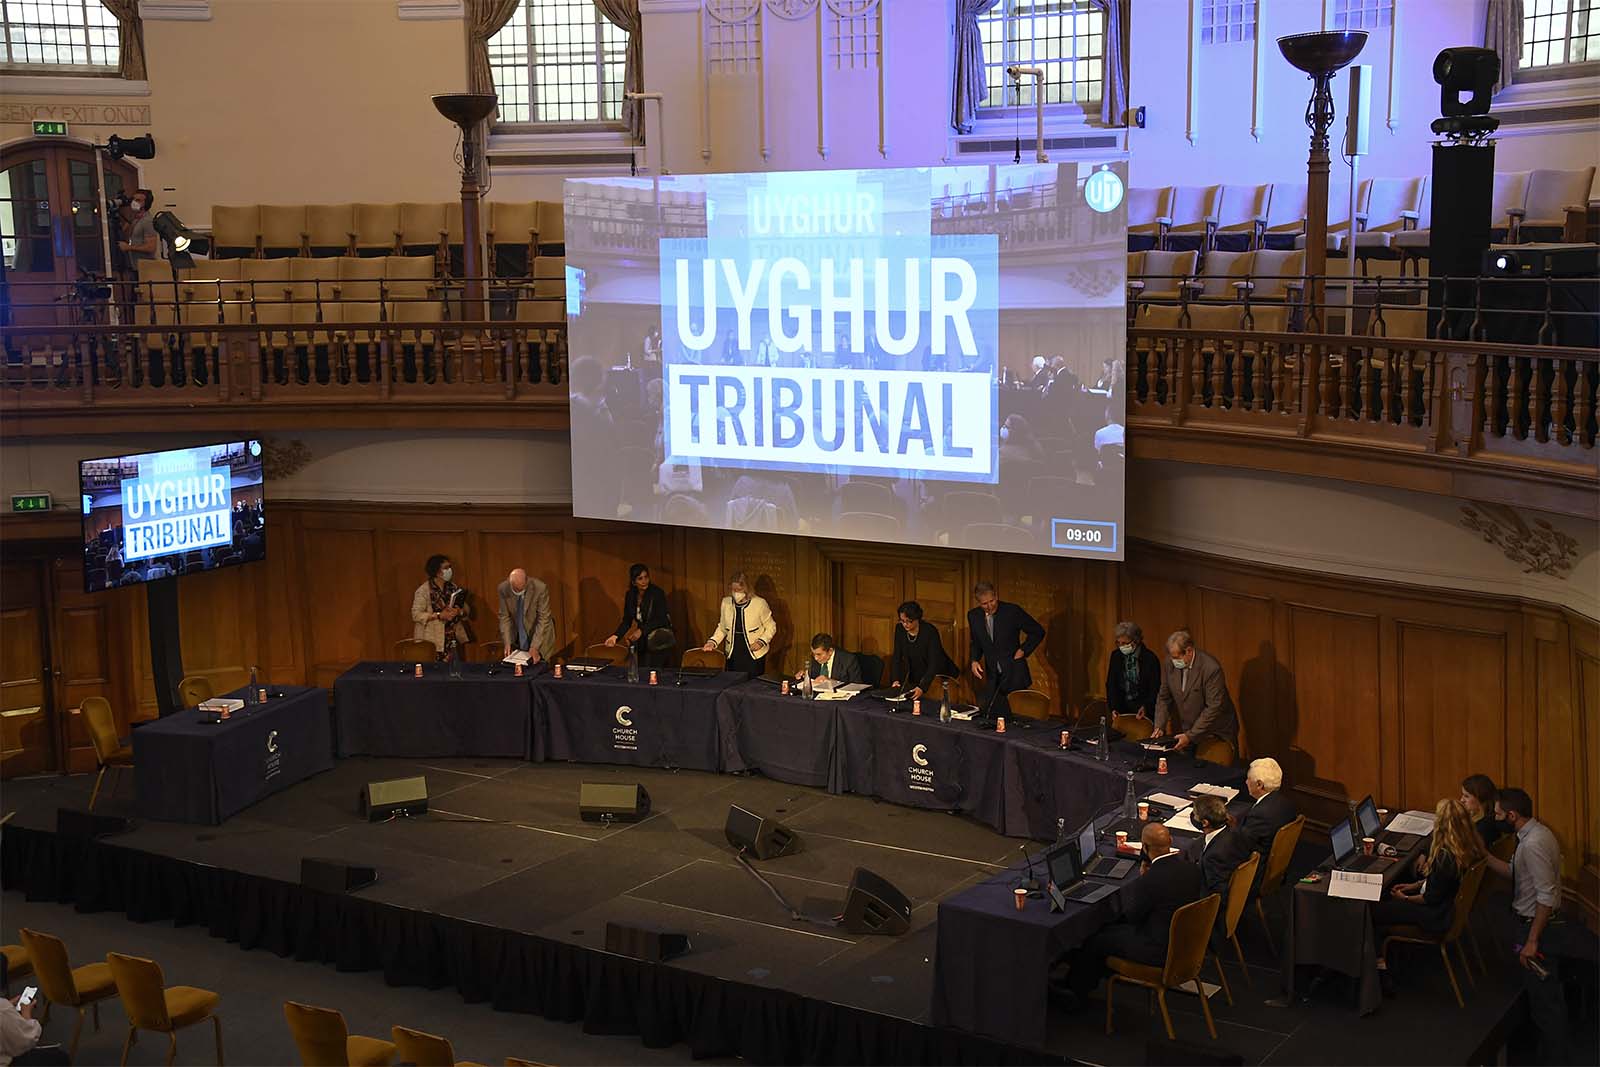 חברי בית הדין העצמאי לאויגור תופסים את מקומם לדיון הראשון בדיונים בבית הכנסייה בלונדון. (AP Photo/Alberto Pezzali)